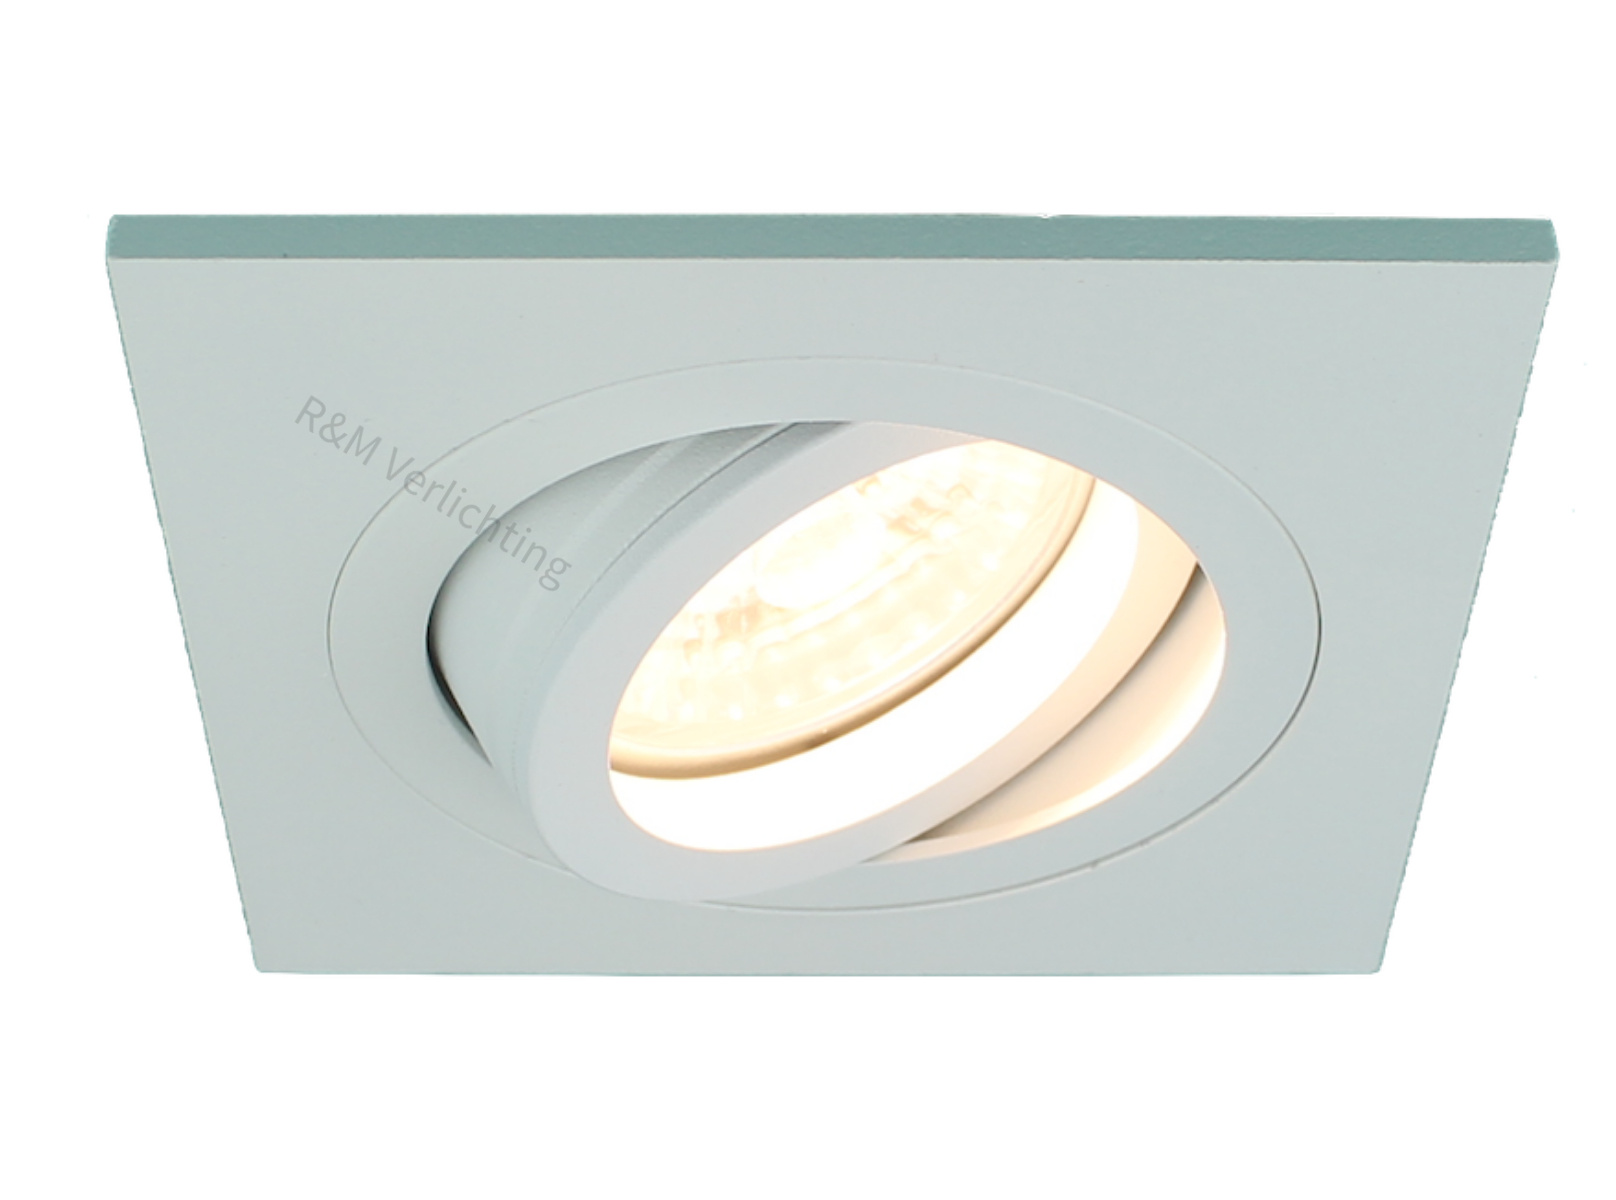 Tante bad Ontwaken Inbouwspot vierkant wit 12v / 230v voor GU10 voor LED lampen - R&M  Verlichting